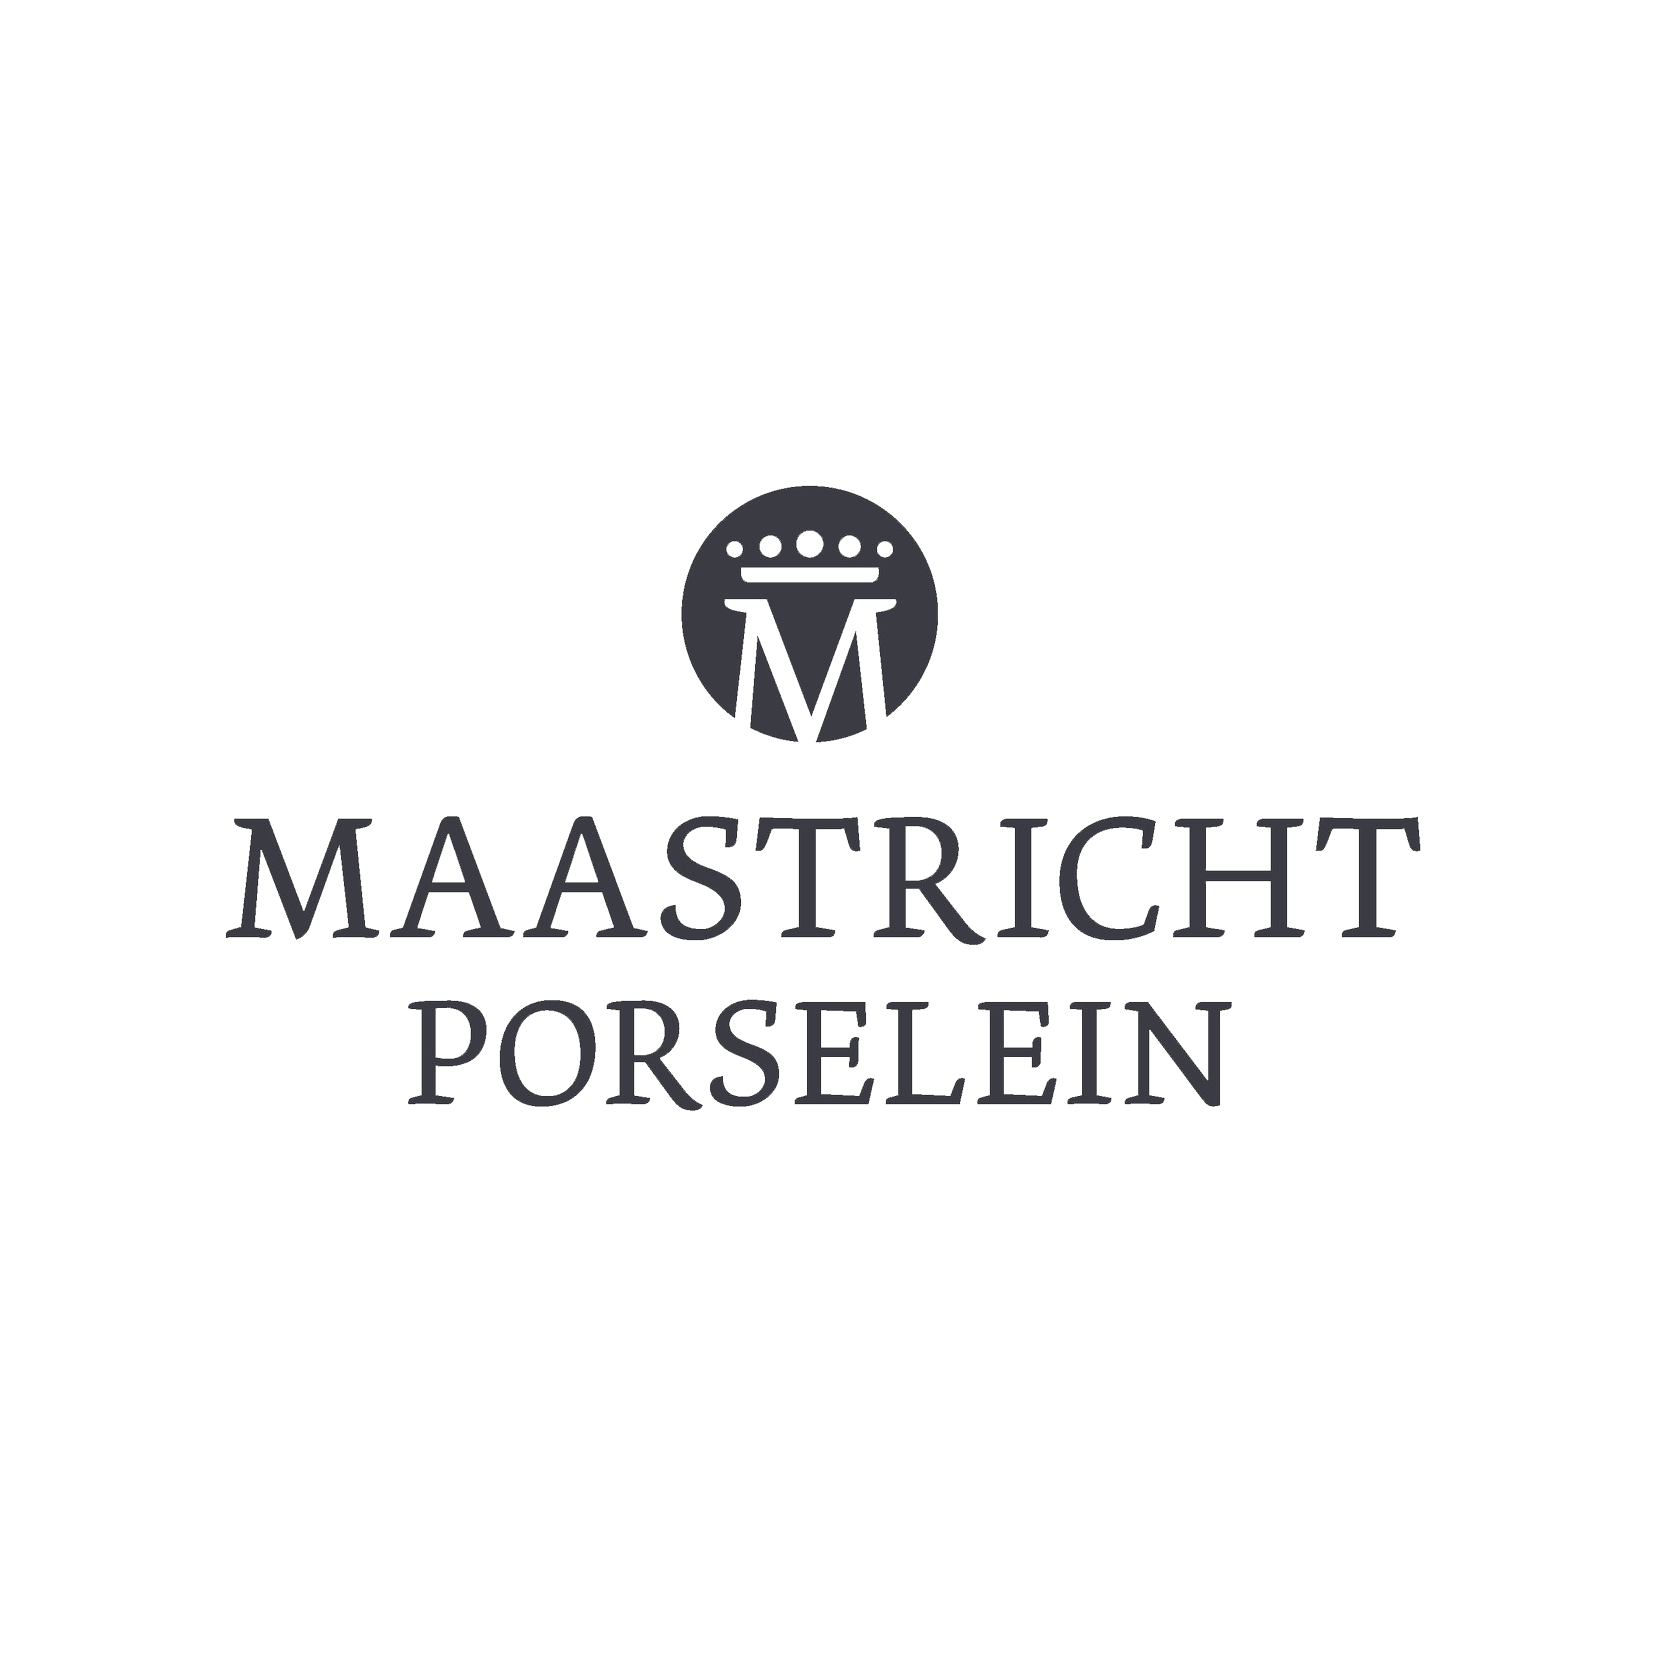 Maatricht Porselein logo